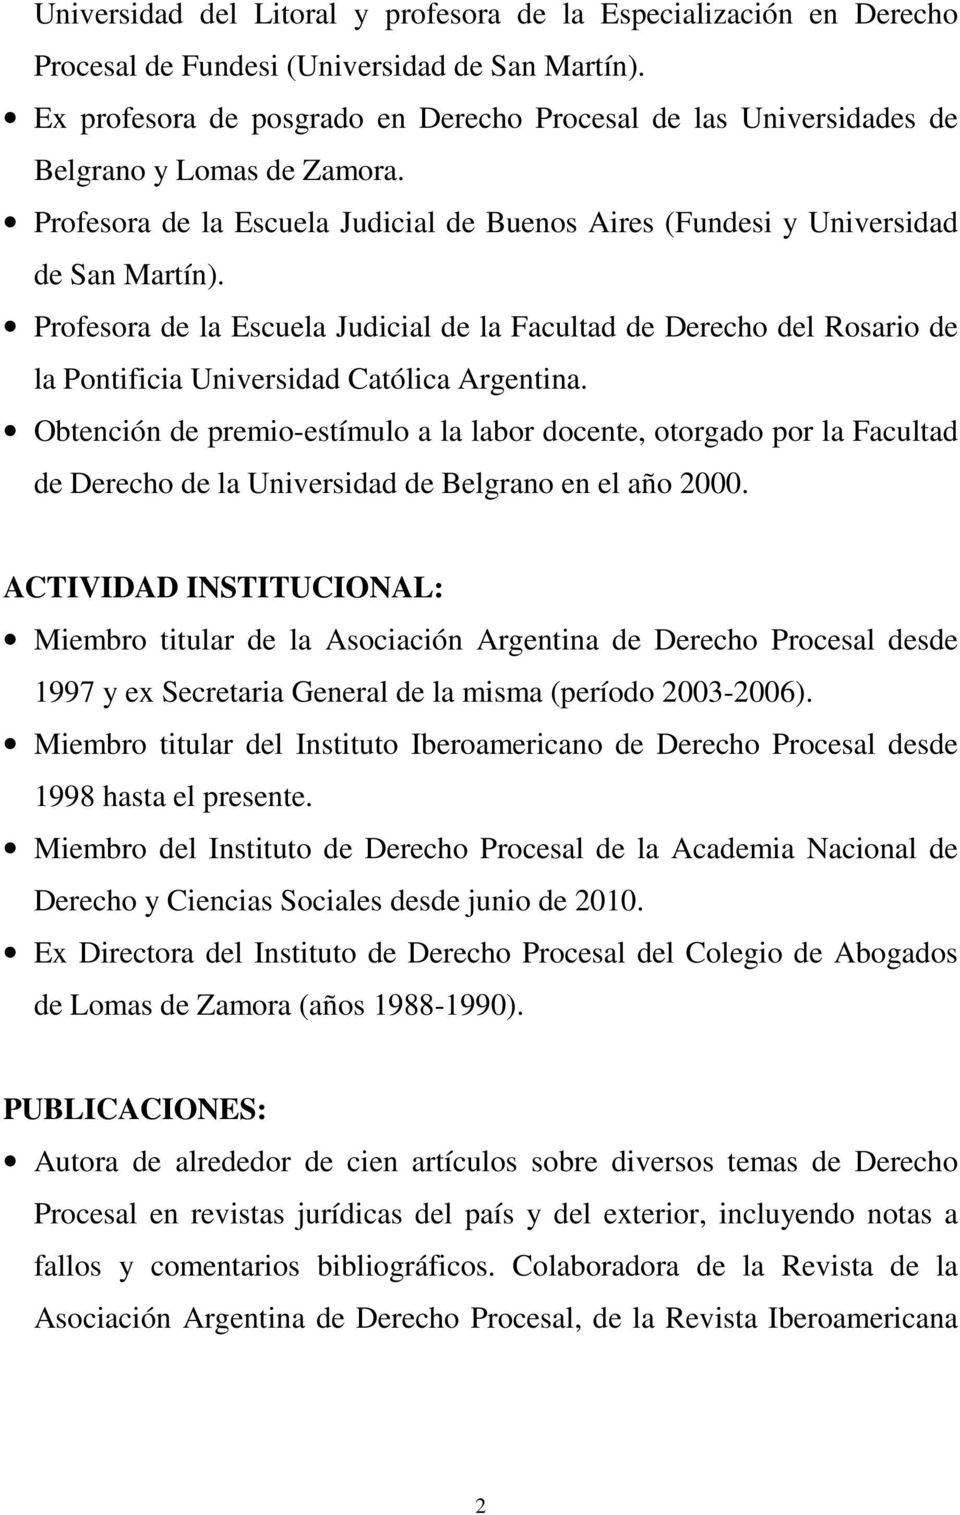 Profesora de la Escuela Judicial de la Facultad de Derecho del Rosario de la Pontificia Universidad Católica Argentina.